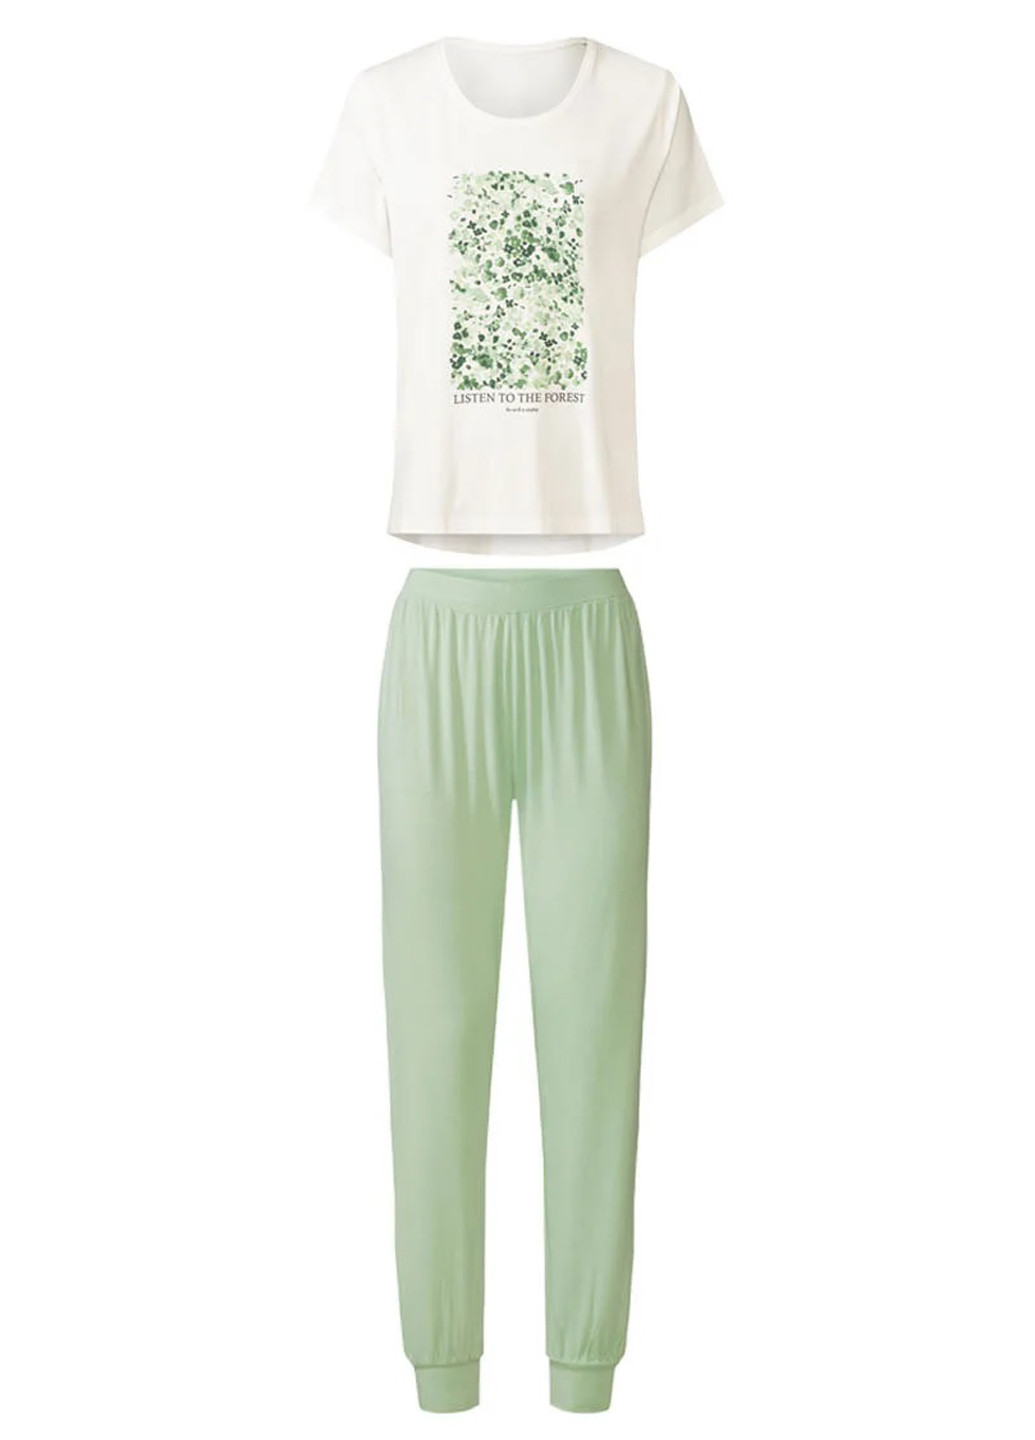 Салатова всесезон піжама (футболка, штани) футболка + штани Esmara